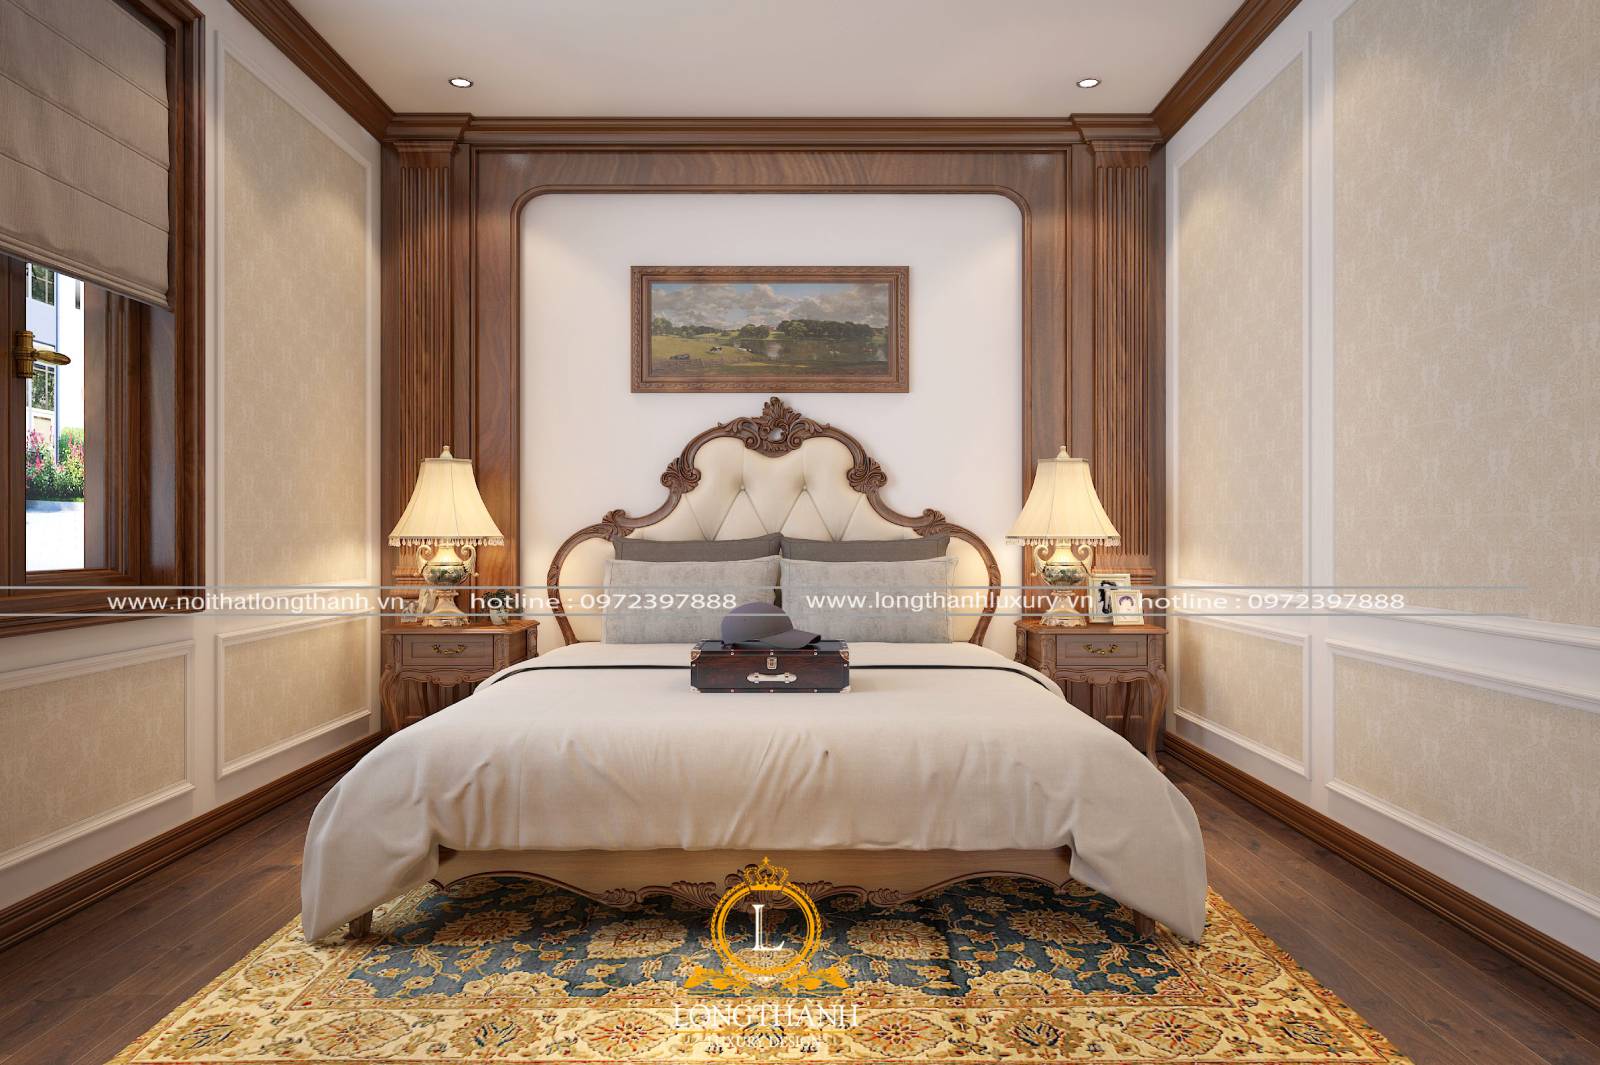 Lựa chọn bài trí đèn phòng ngủ tân cổ điển phù hợp với thiết kế nội thất chung